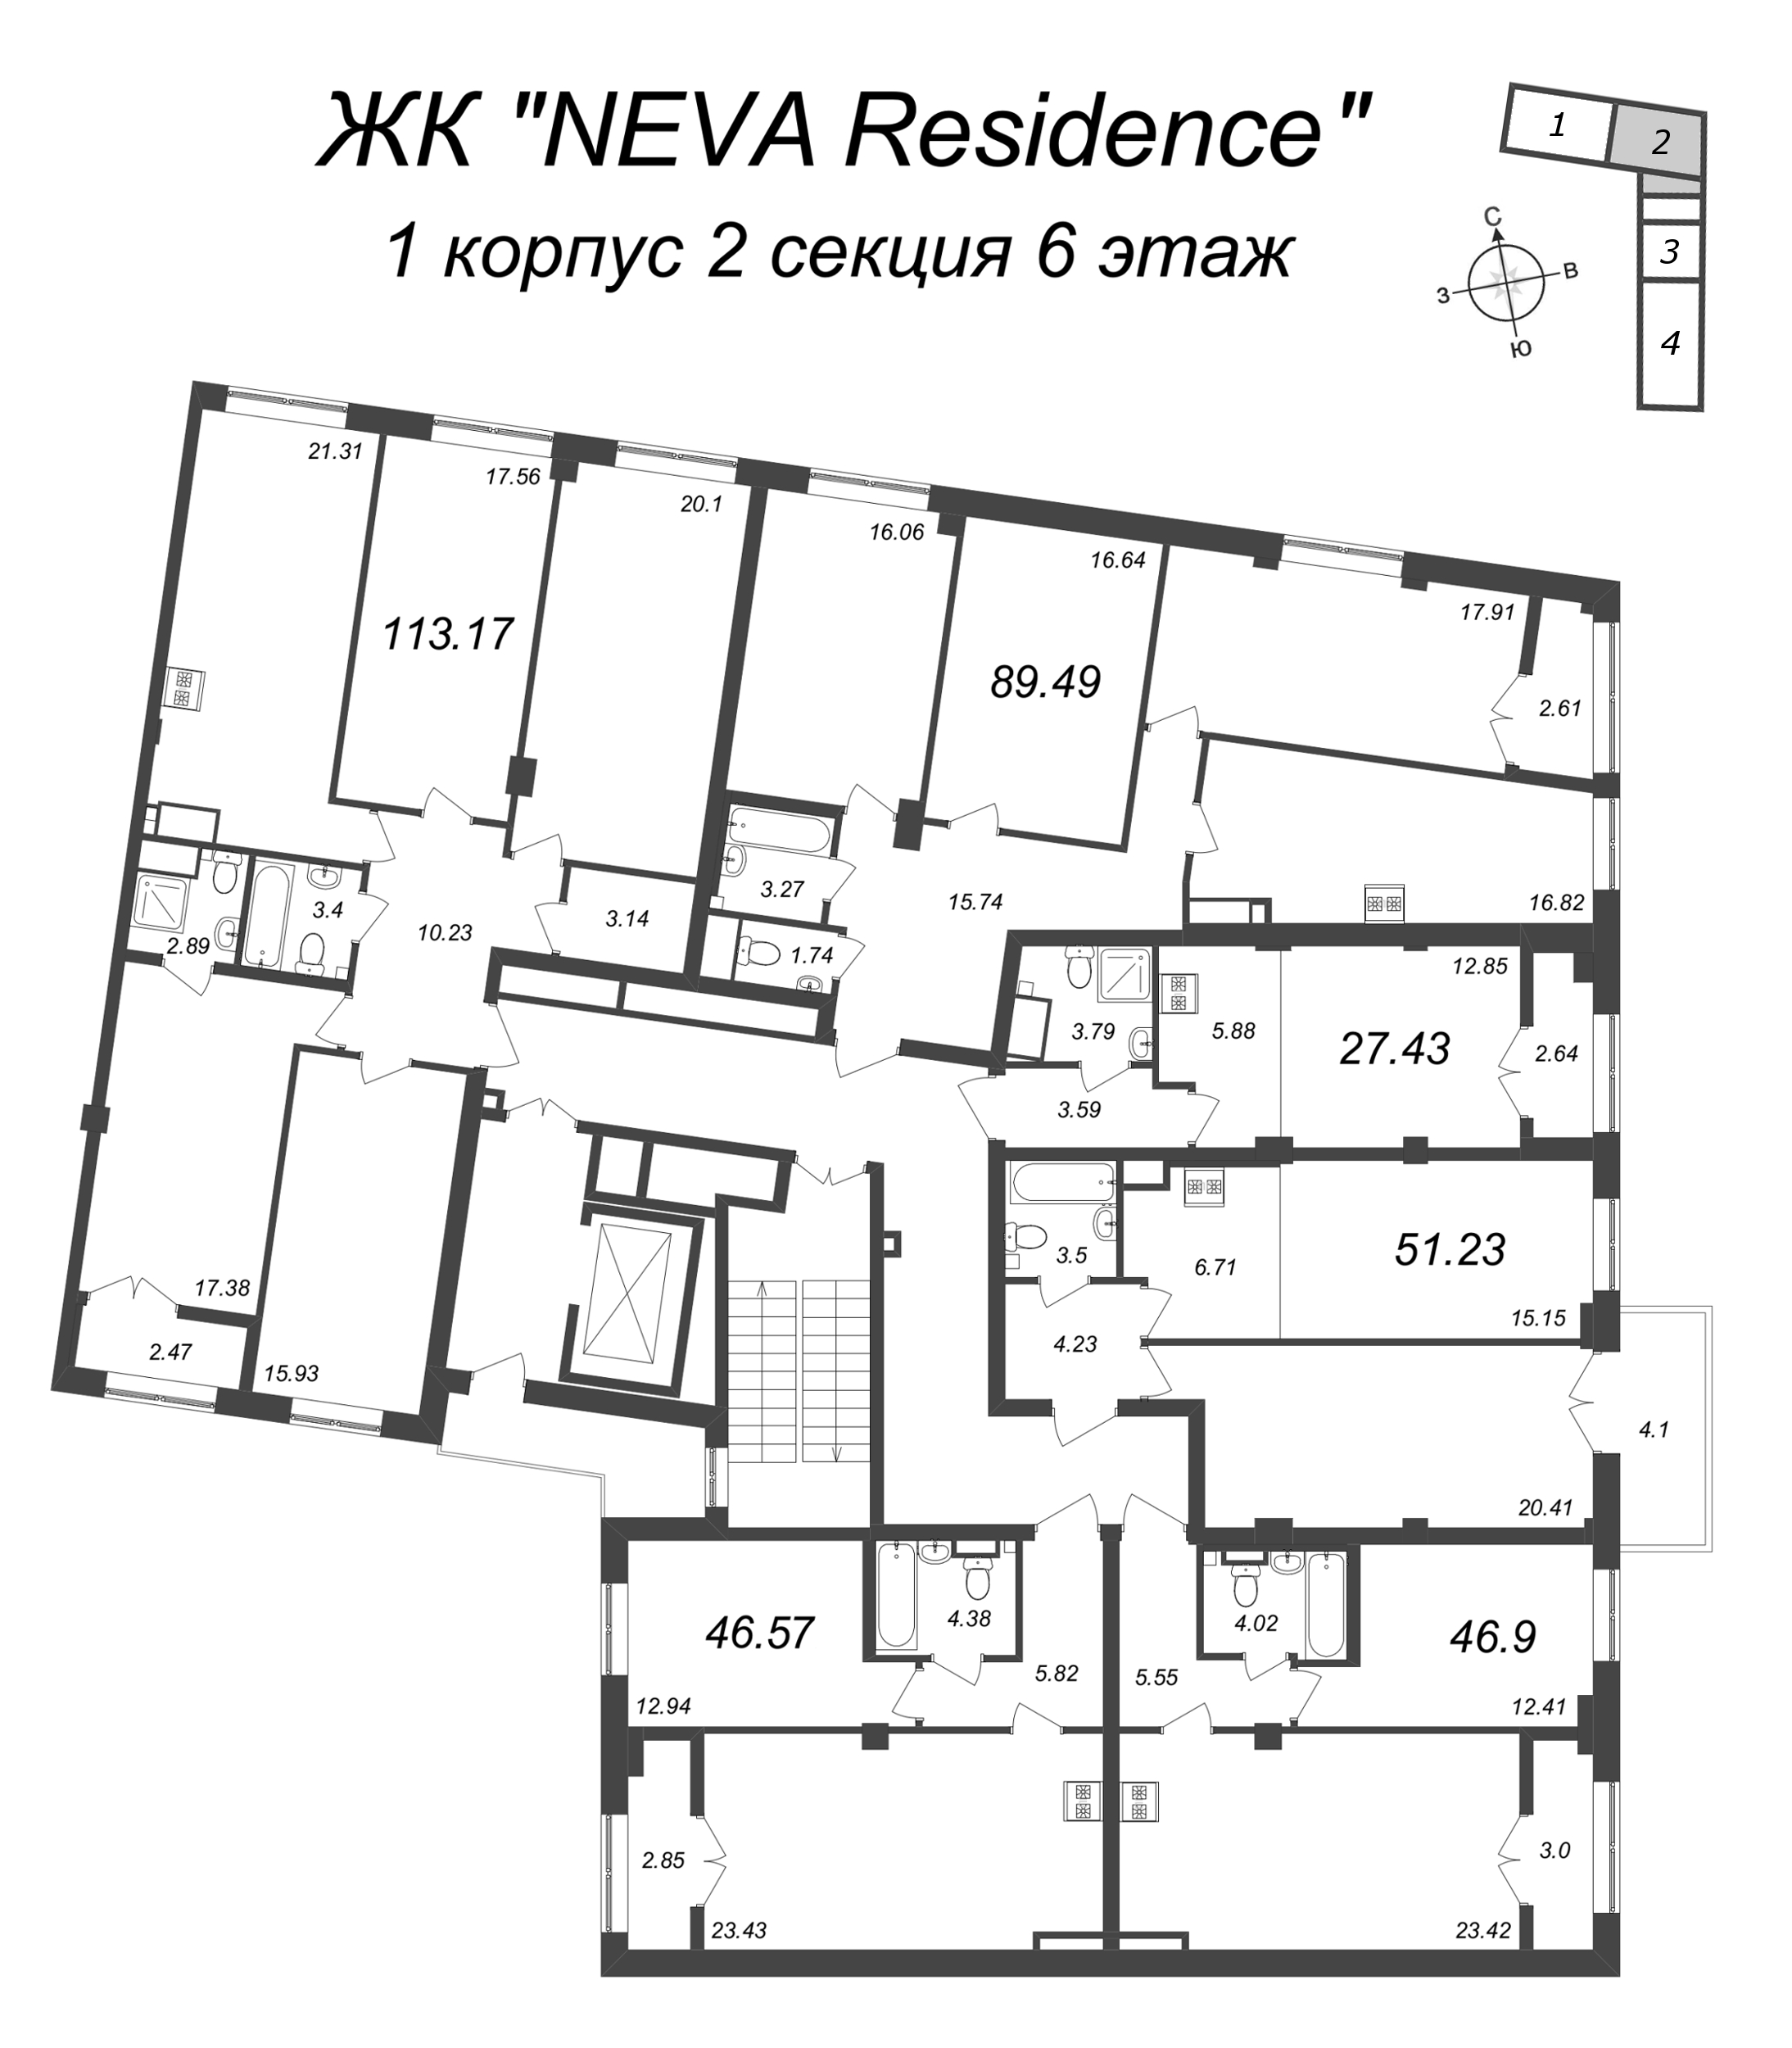 4-комнатная (Евро) квартира, 89.49 м² в ЖК "Neva Residence" - планировка этажа